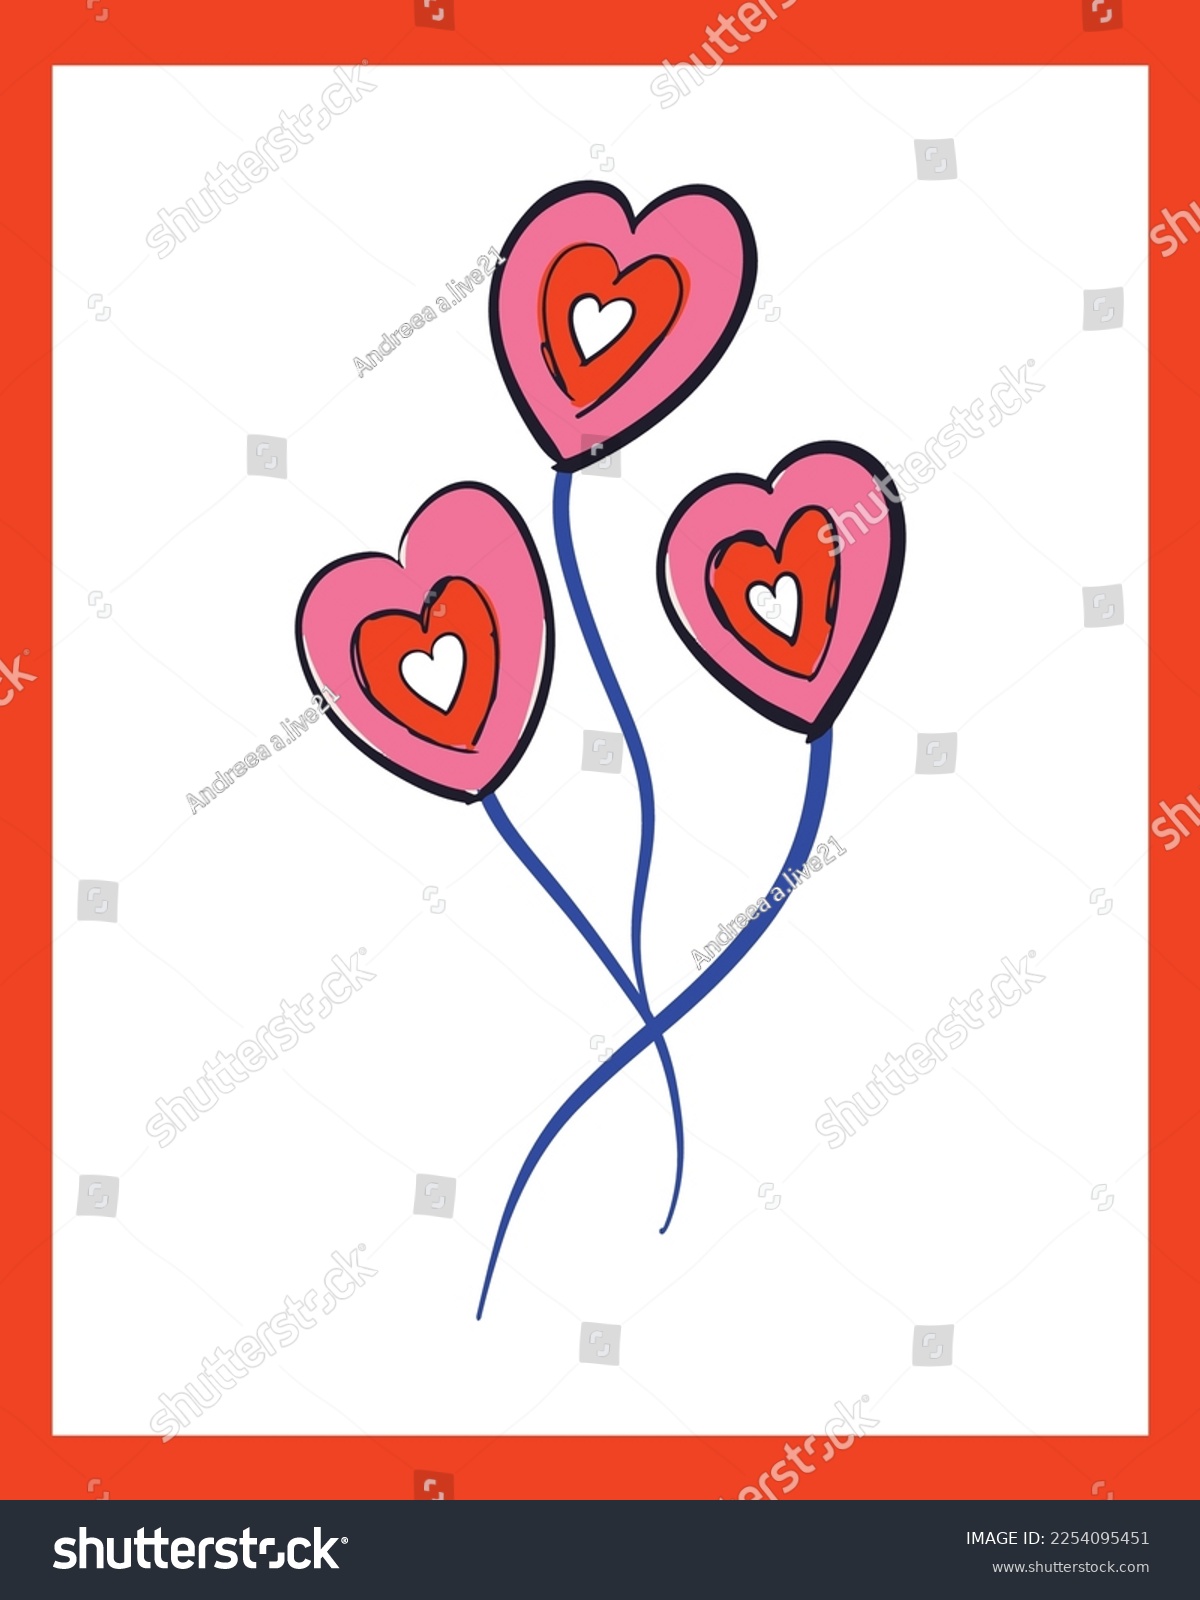 SVG of Valentine's Day Vector SVG, Doodle Hearts Illustration, Hearts Vectors, Love Illustration, Pink Hearts, Painted Hearts Illustration, Valentines Day Doodle svg